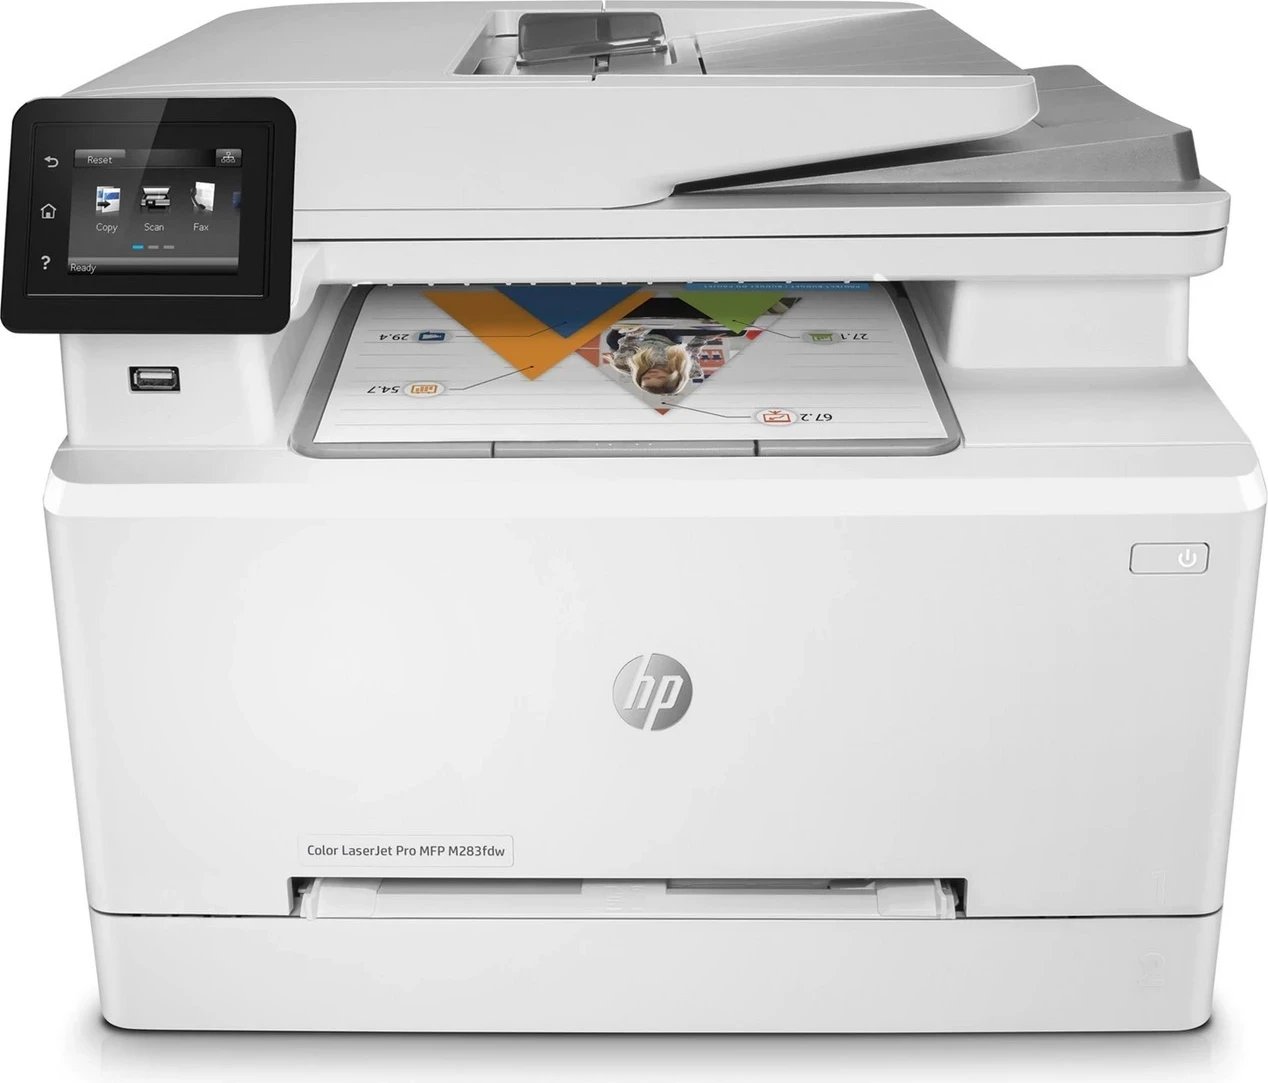 Printer HP LaserJet MFP M283fdw , i bardhë